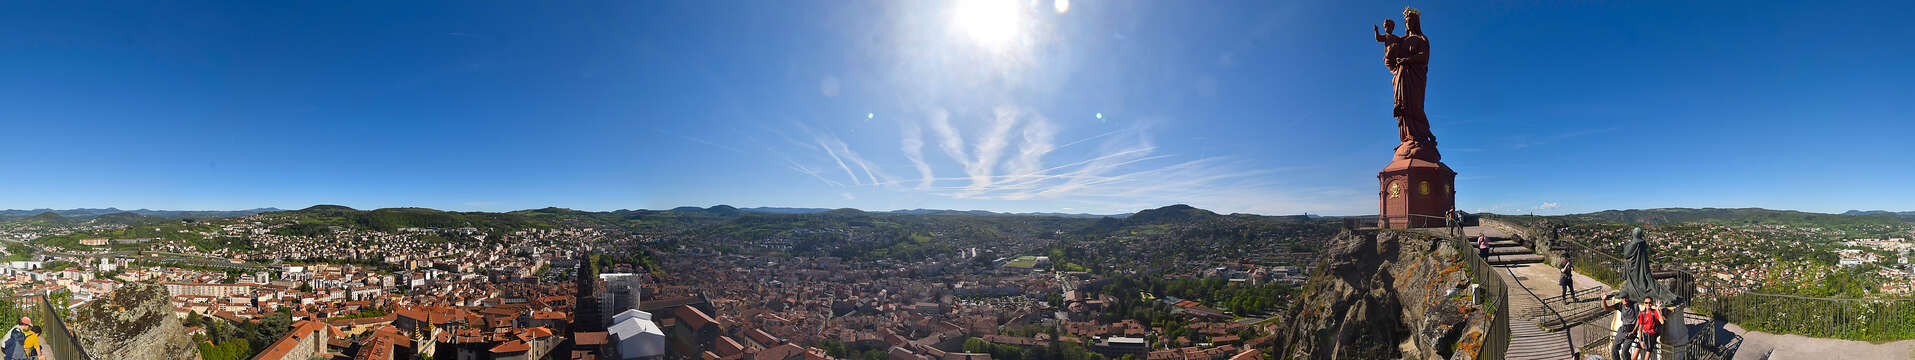 Webcam van het standbeeld Notre-Dame de France 360° in Le Puy-en-Velay